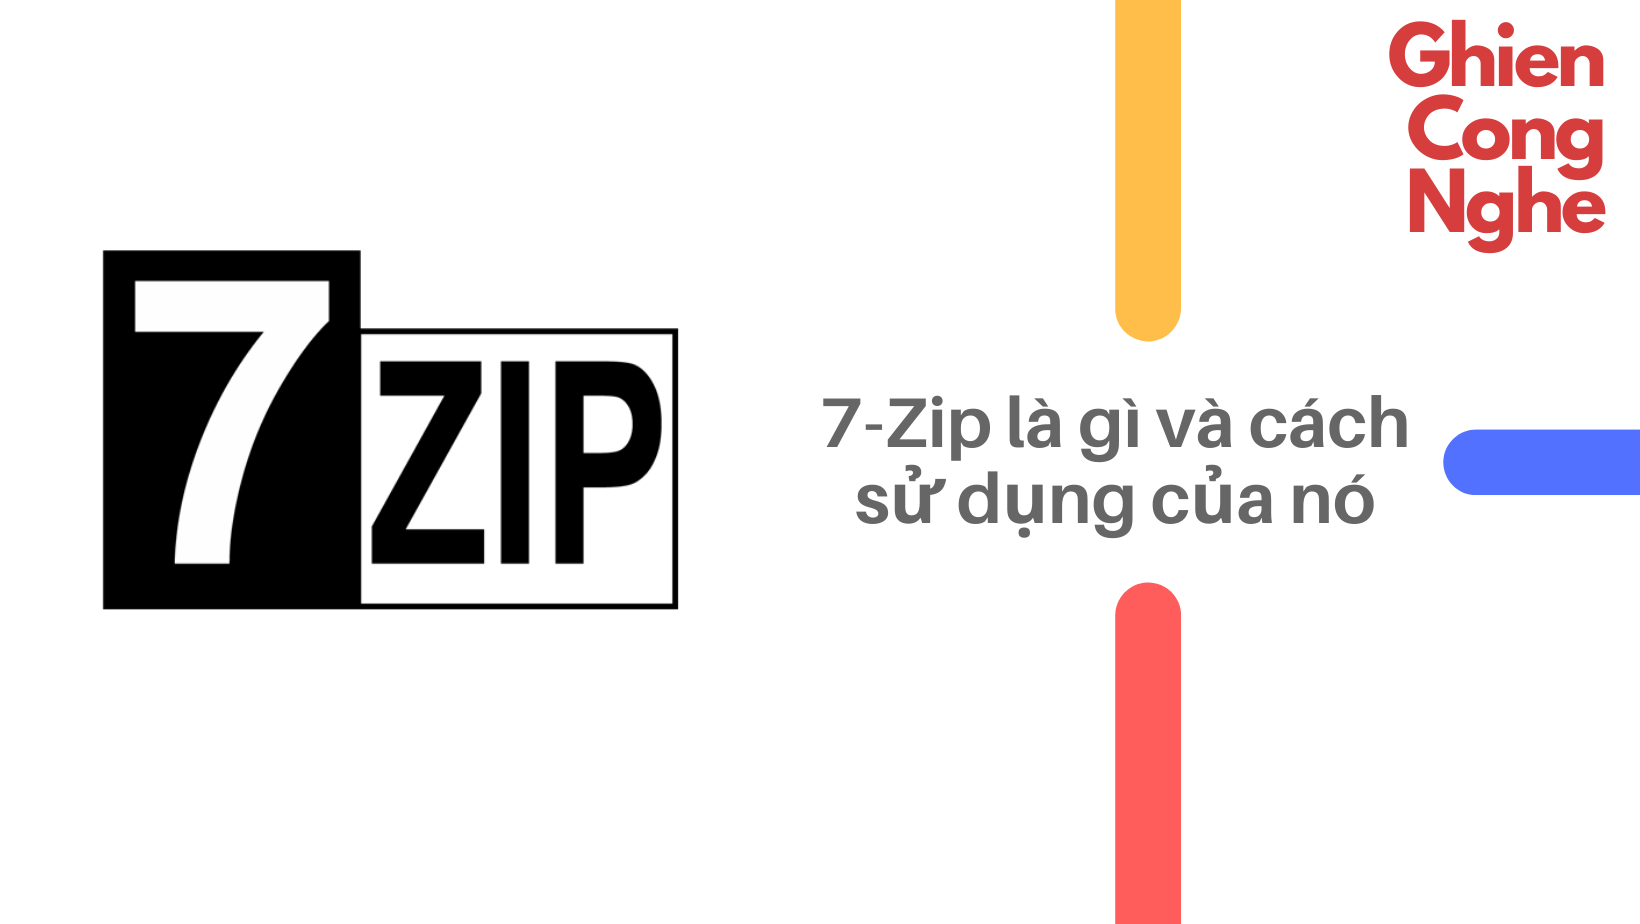 7 zip là gì